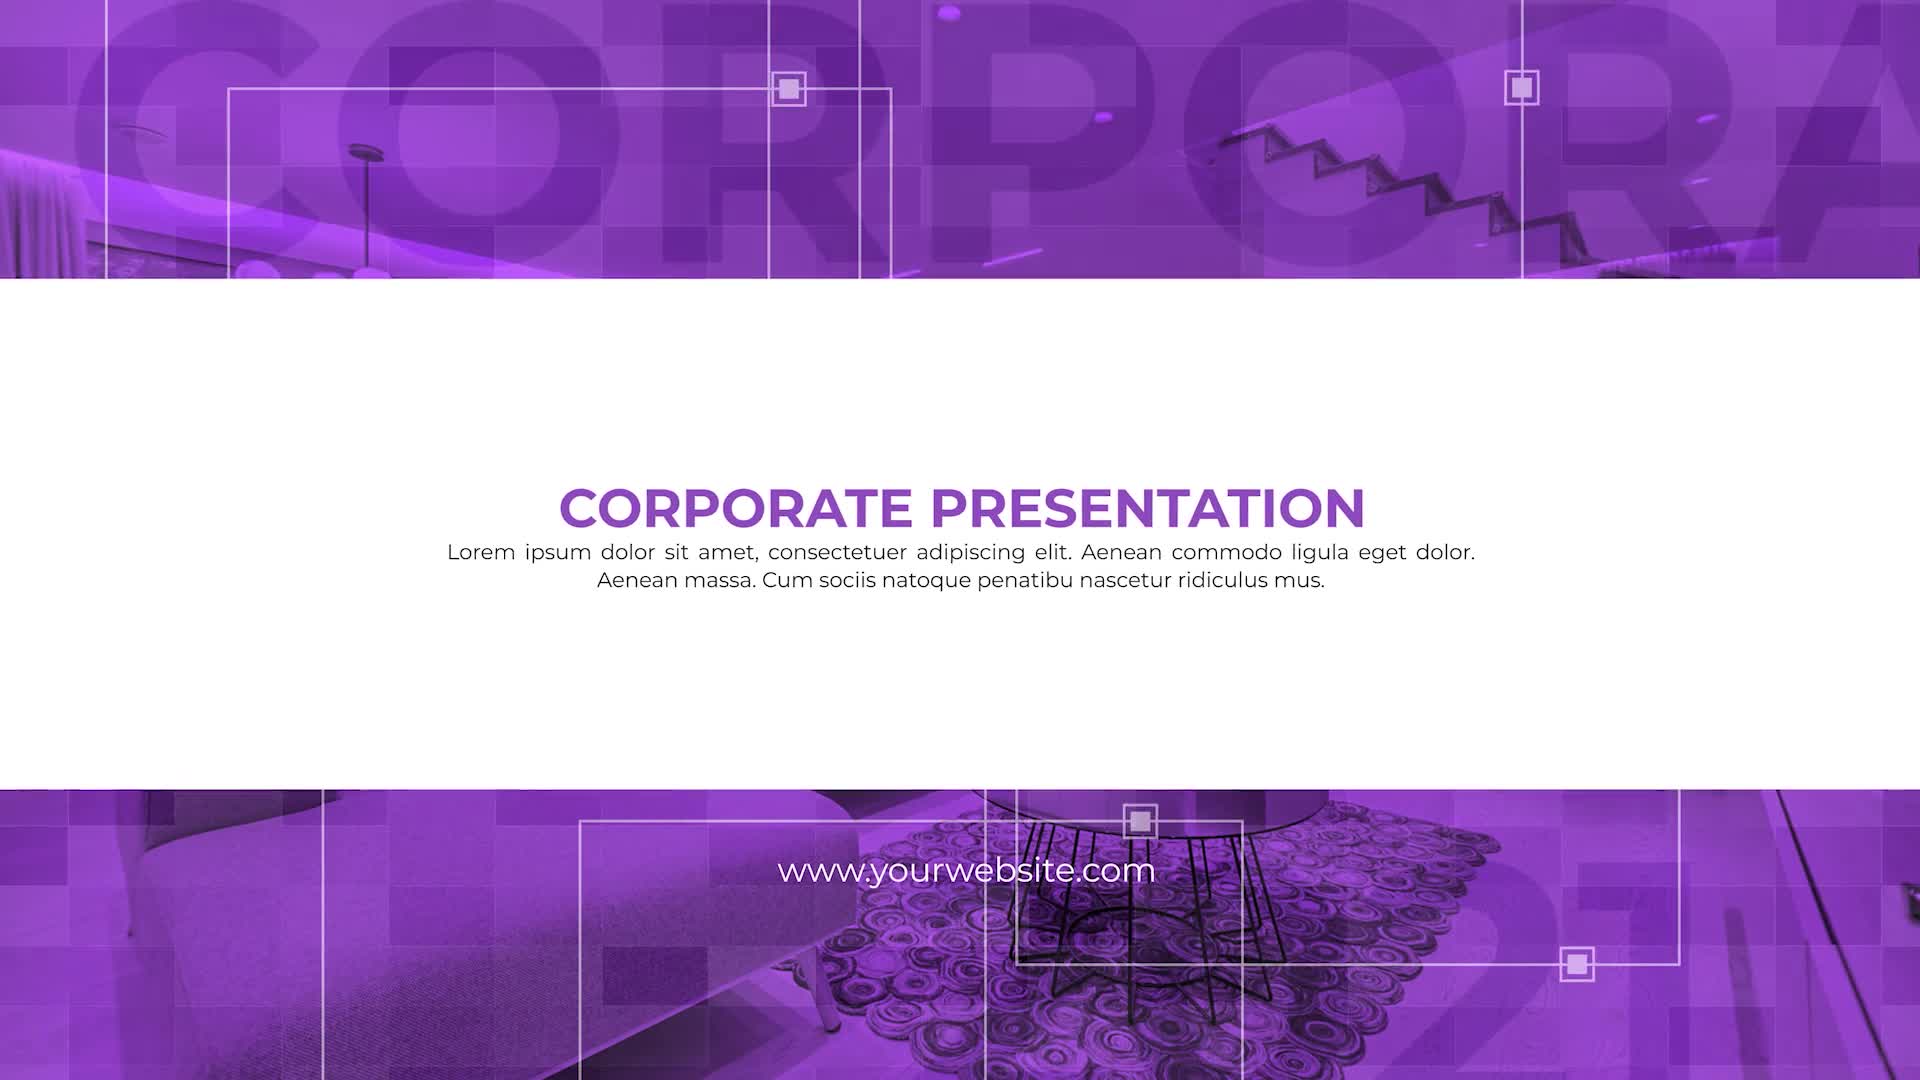 Corporate Presentation Videohive 35673679 Premiere Pro Image 1